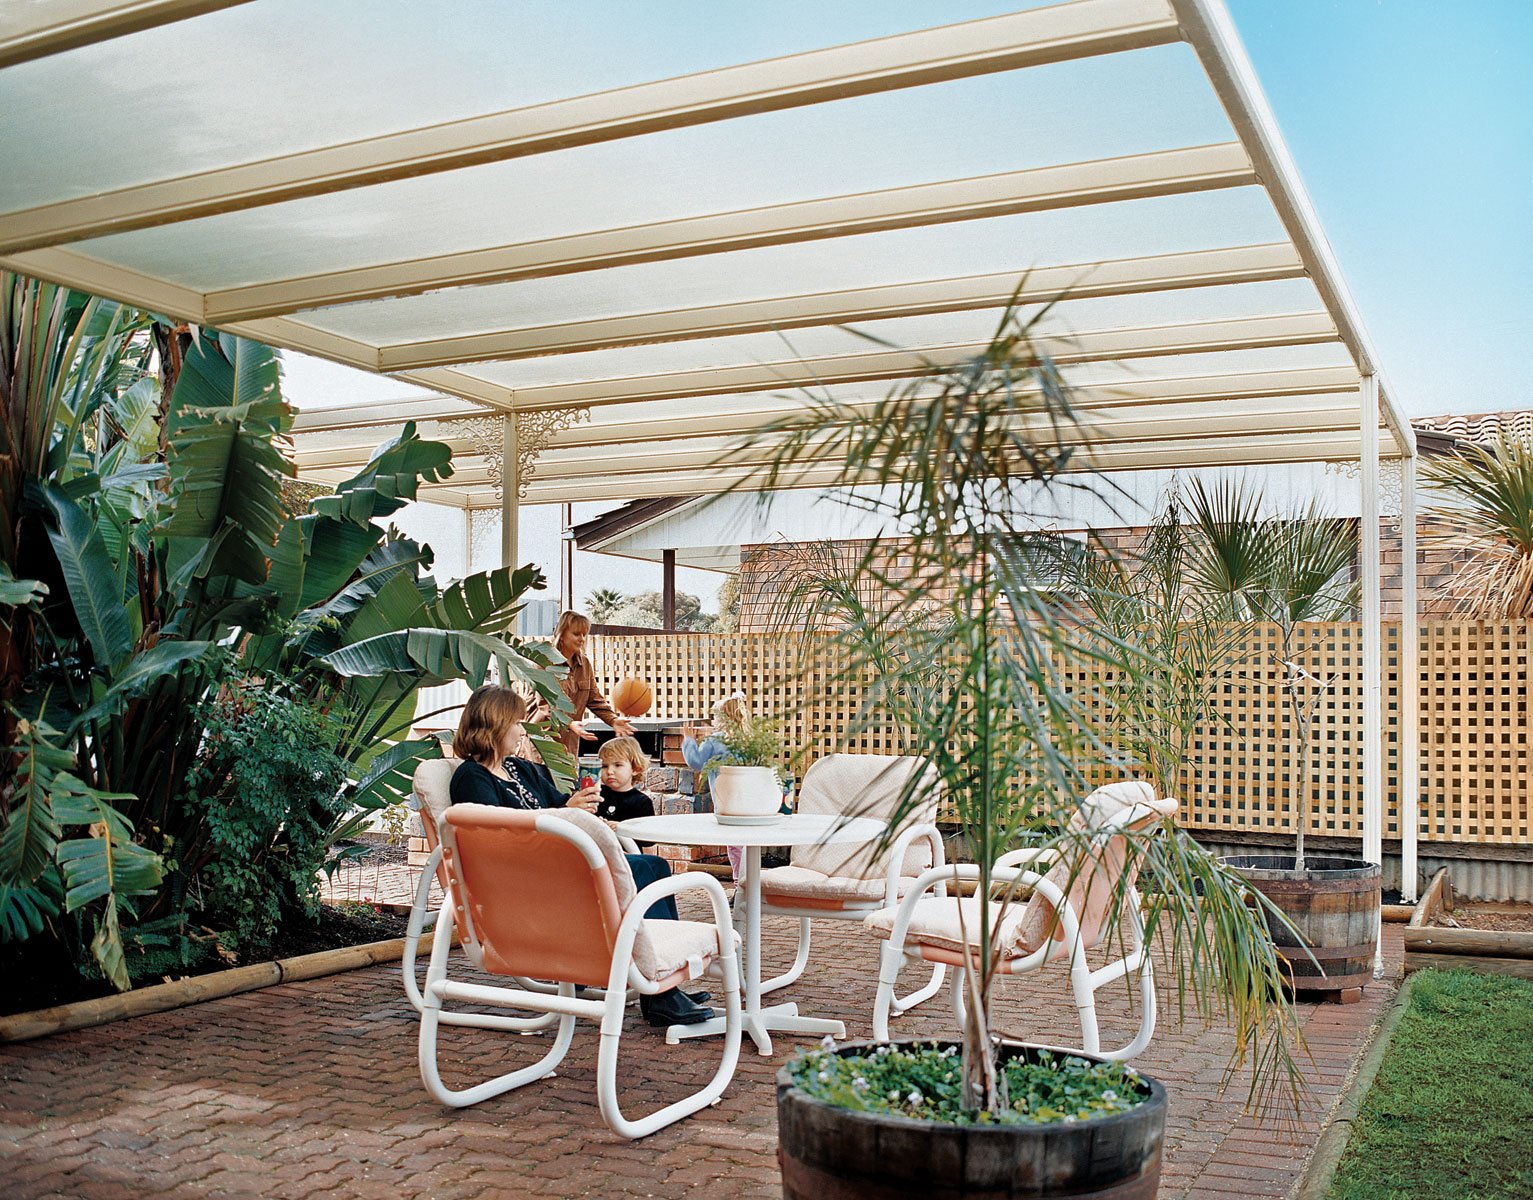 patios-verandah-carport-outback-pergola-04 (1)